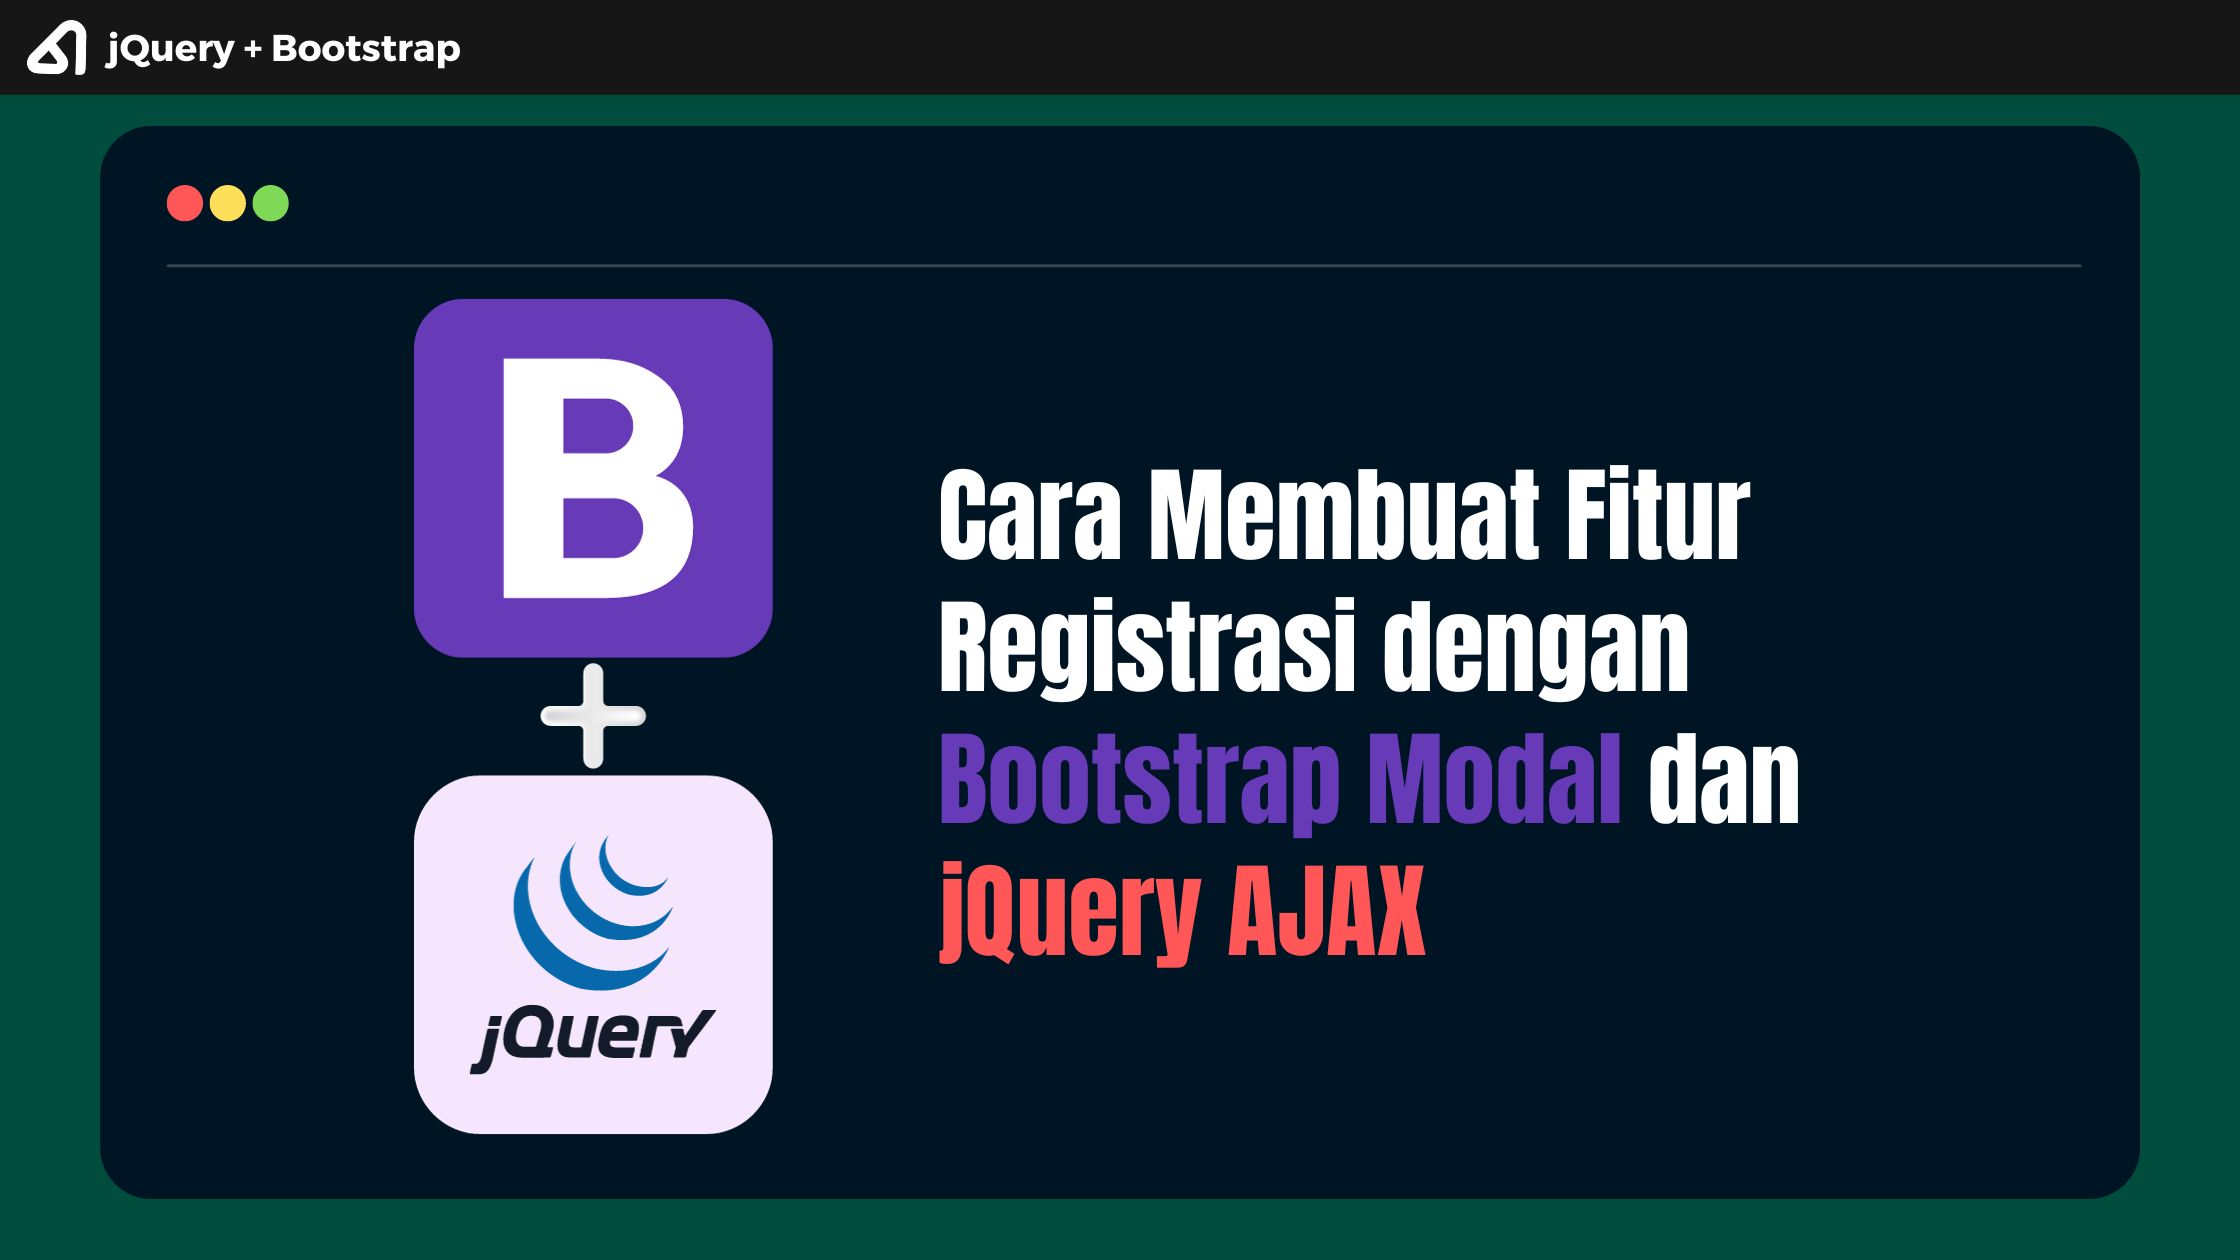 Membuat Fitur Registrasi dengan Bootstrap Modal dan jQuery AJAX